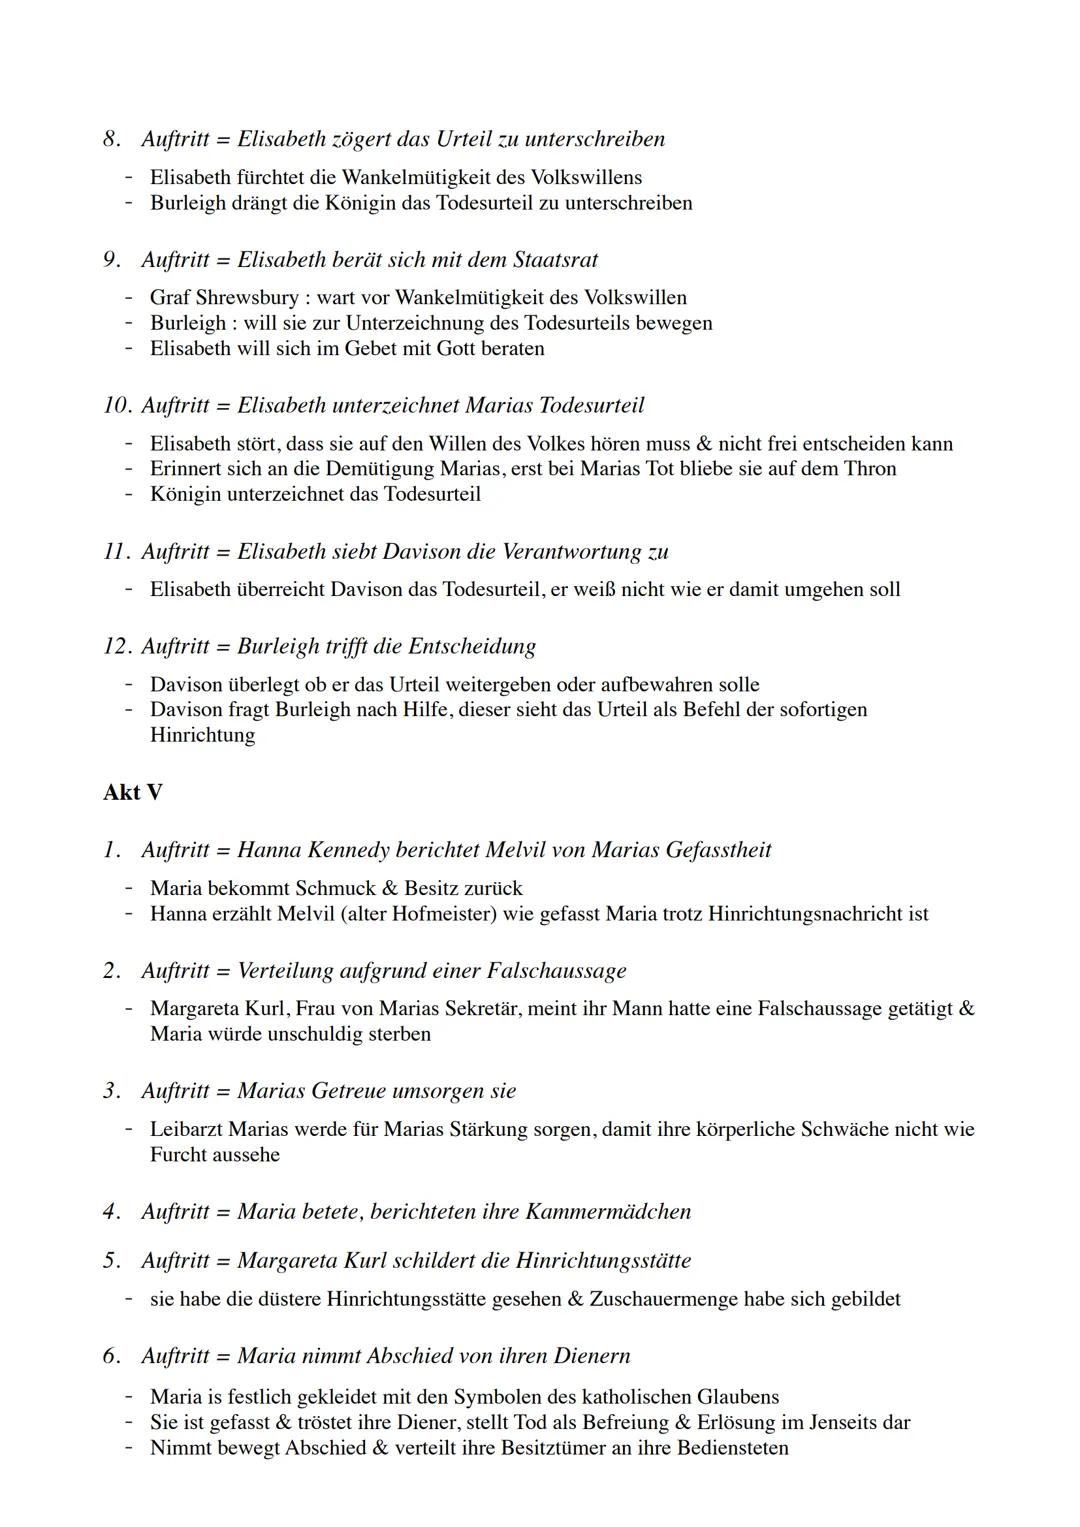 Dramen - Analyse
Maria Stuart:
-
von Friedrich Schiller
-
Vertreter des Sturm & Drangs
- ab 1799 mit Goethe Vertreter Weimarer Klassik
- im 